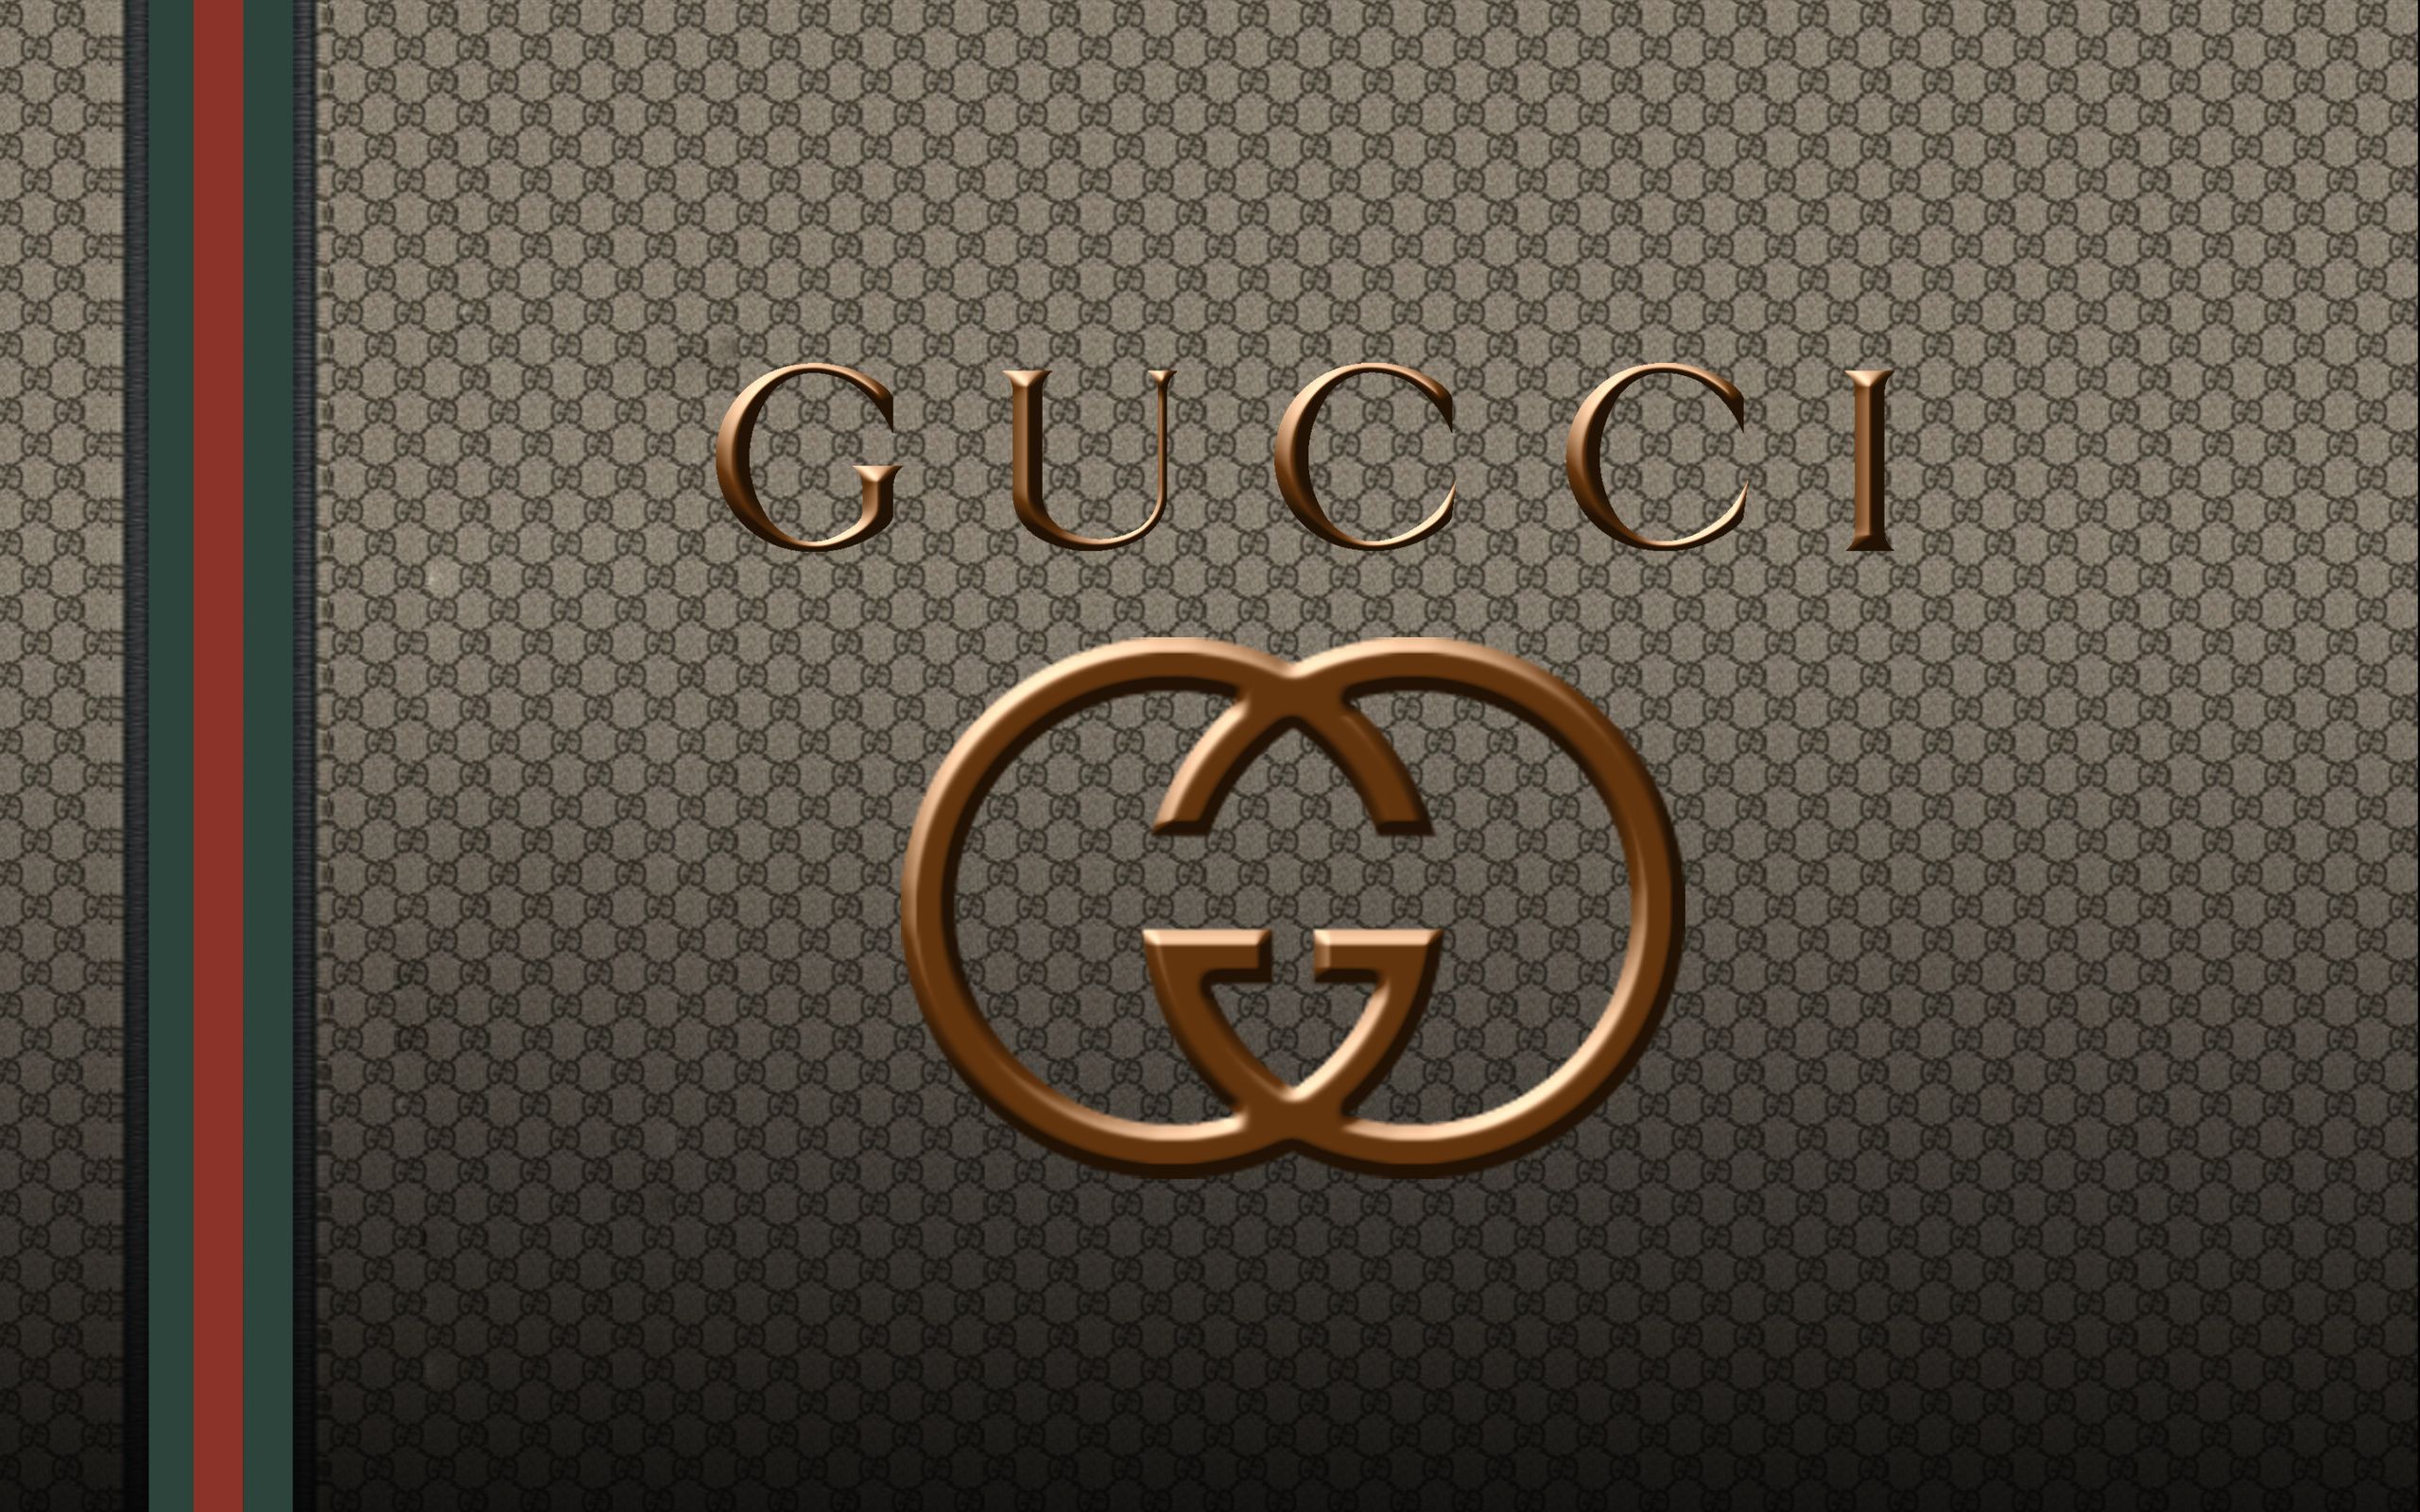 10 Gucci Fondos De Pantalla HD Y Fondos De Escritorio | vlr.eng.br